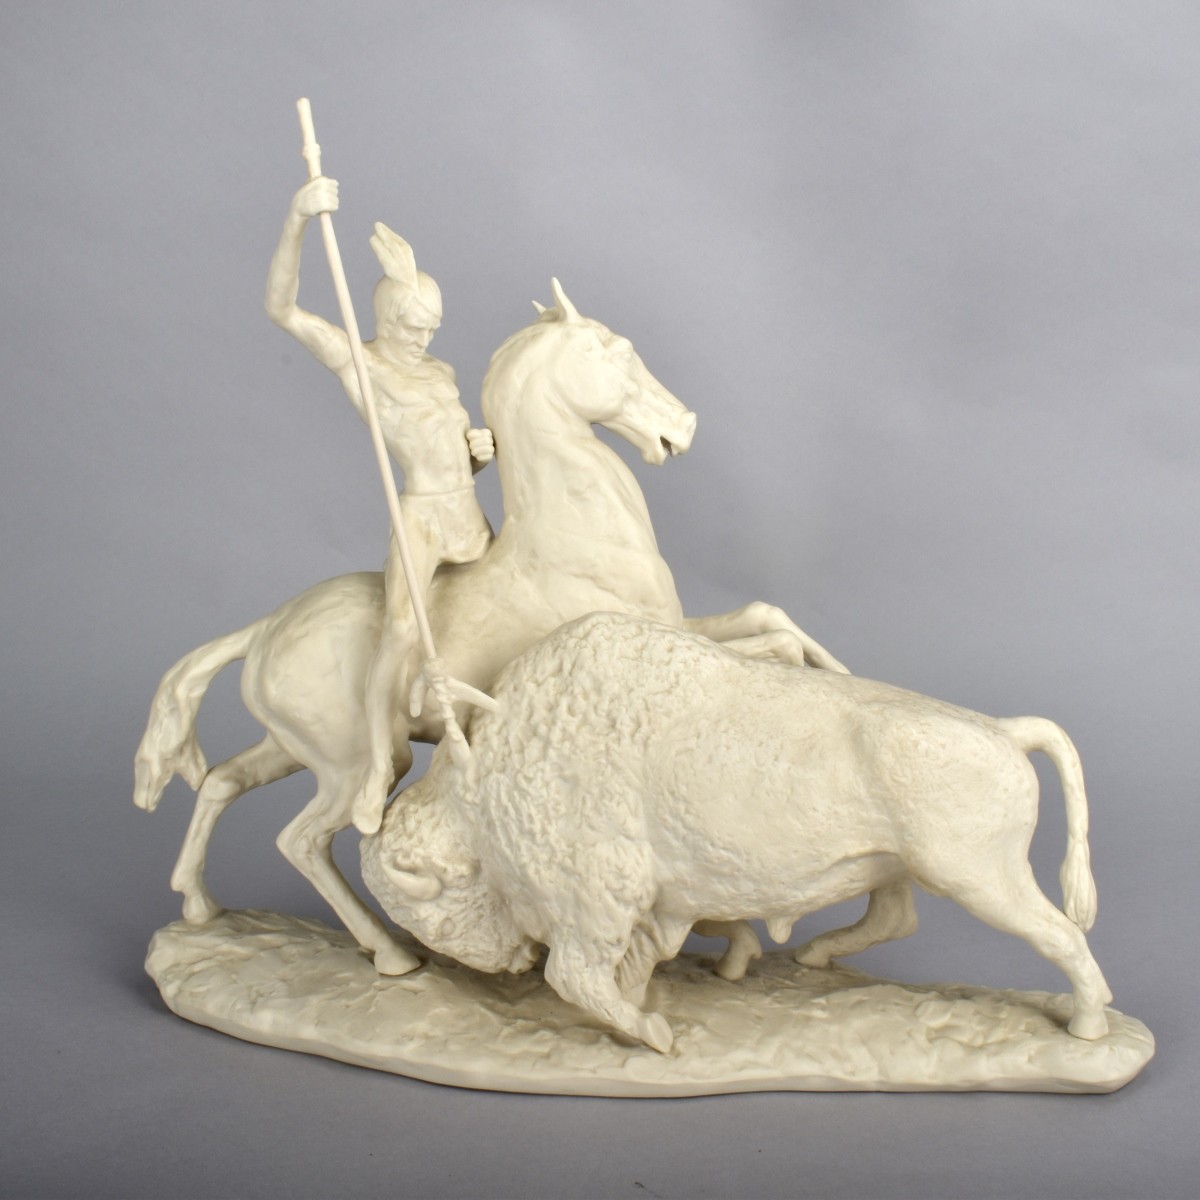 Lg. Ispanky "The Hunt" Figurine